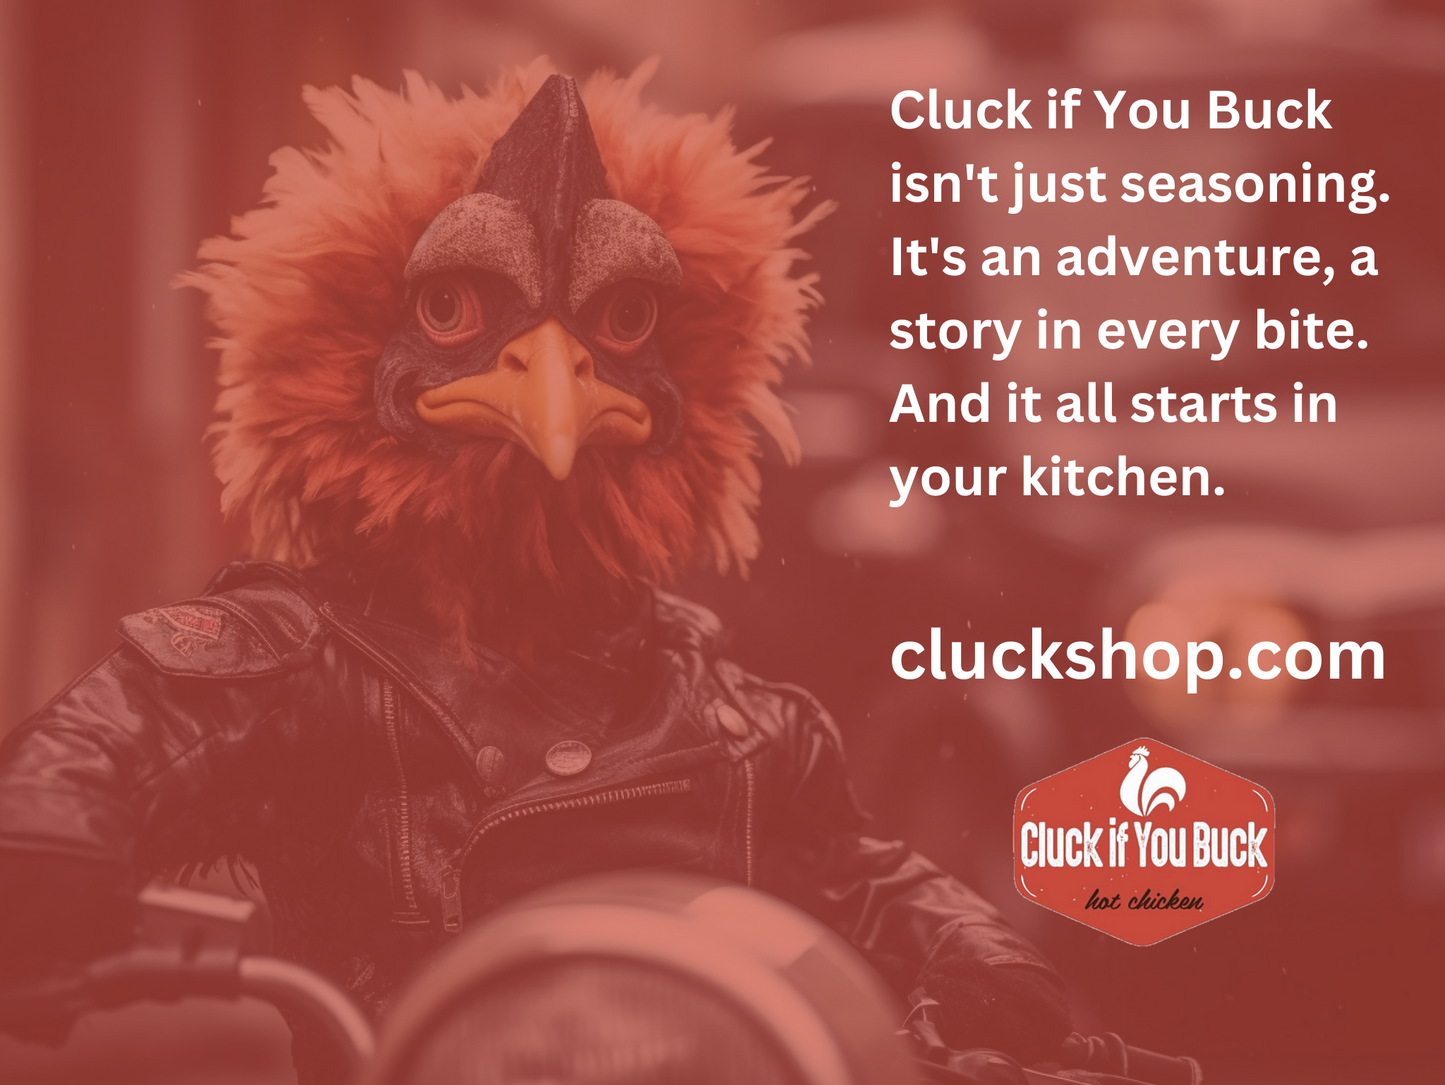 Cluck If You Buck - Nashville Hot - Sweet Heat Sea Salt - 12 Pack - Restaurant Bundle